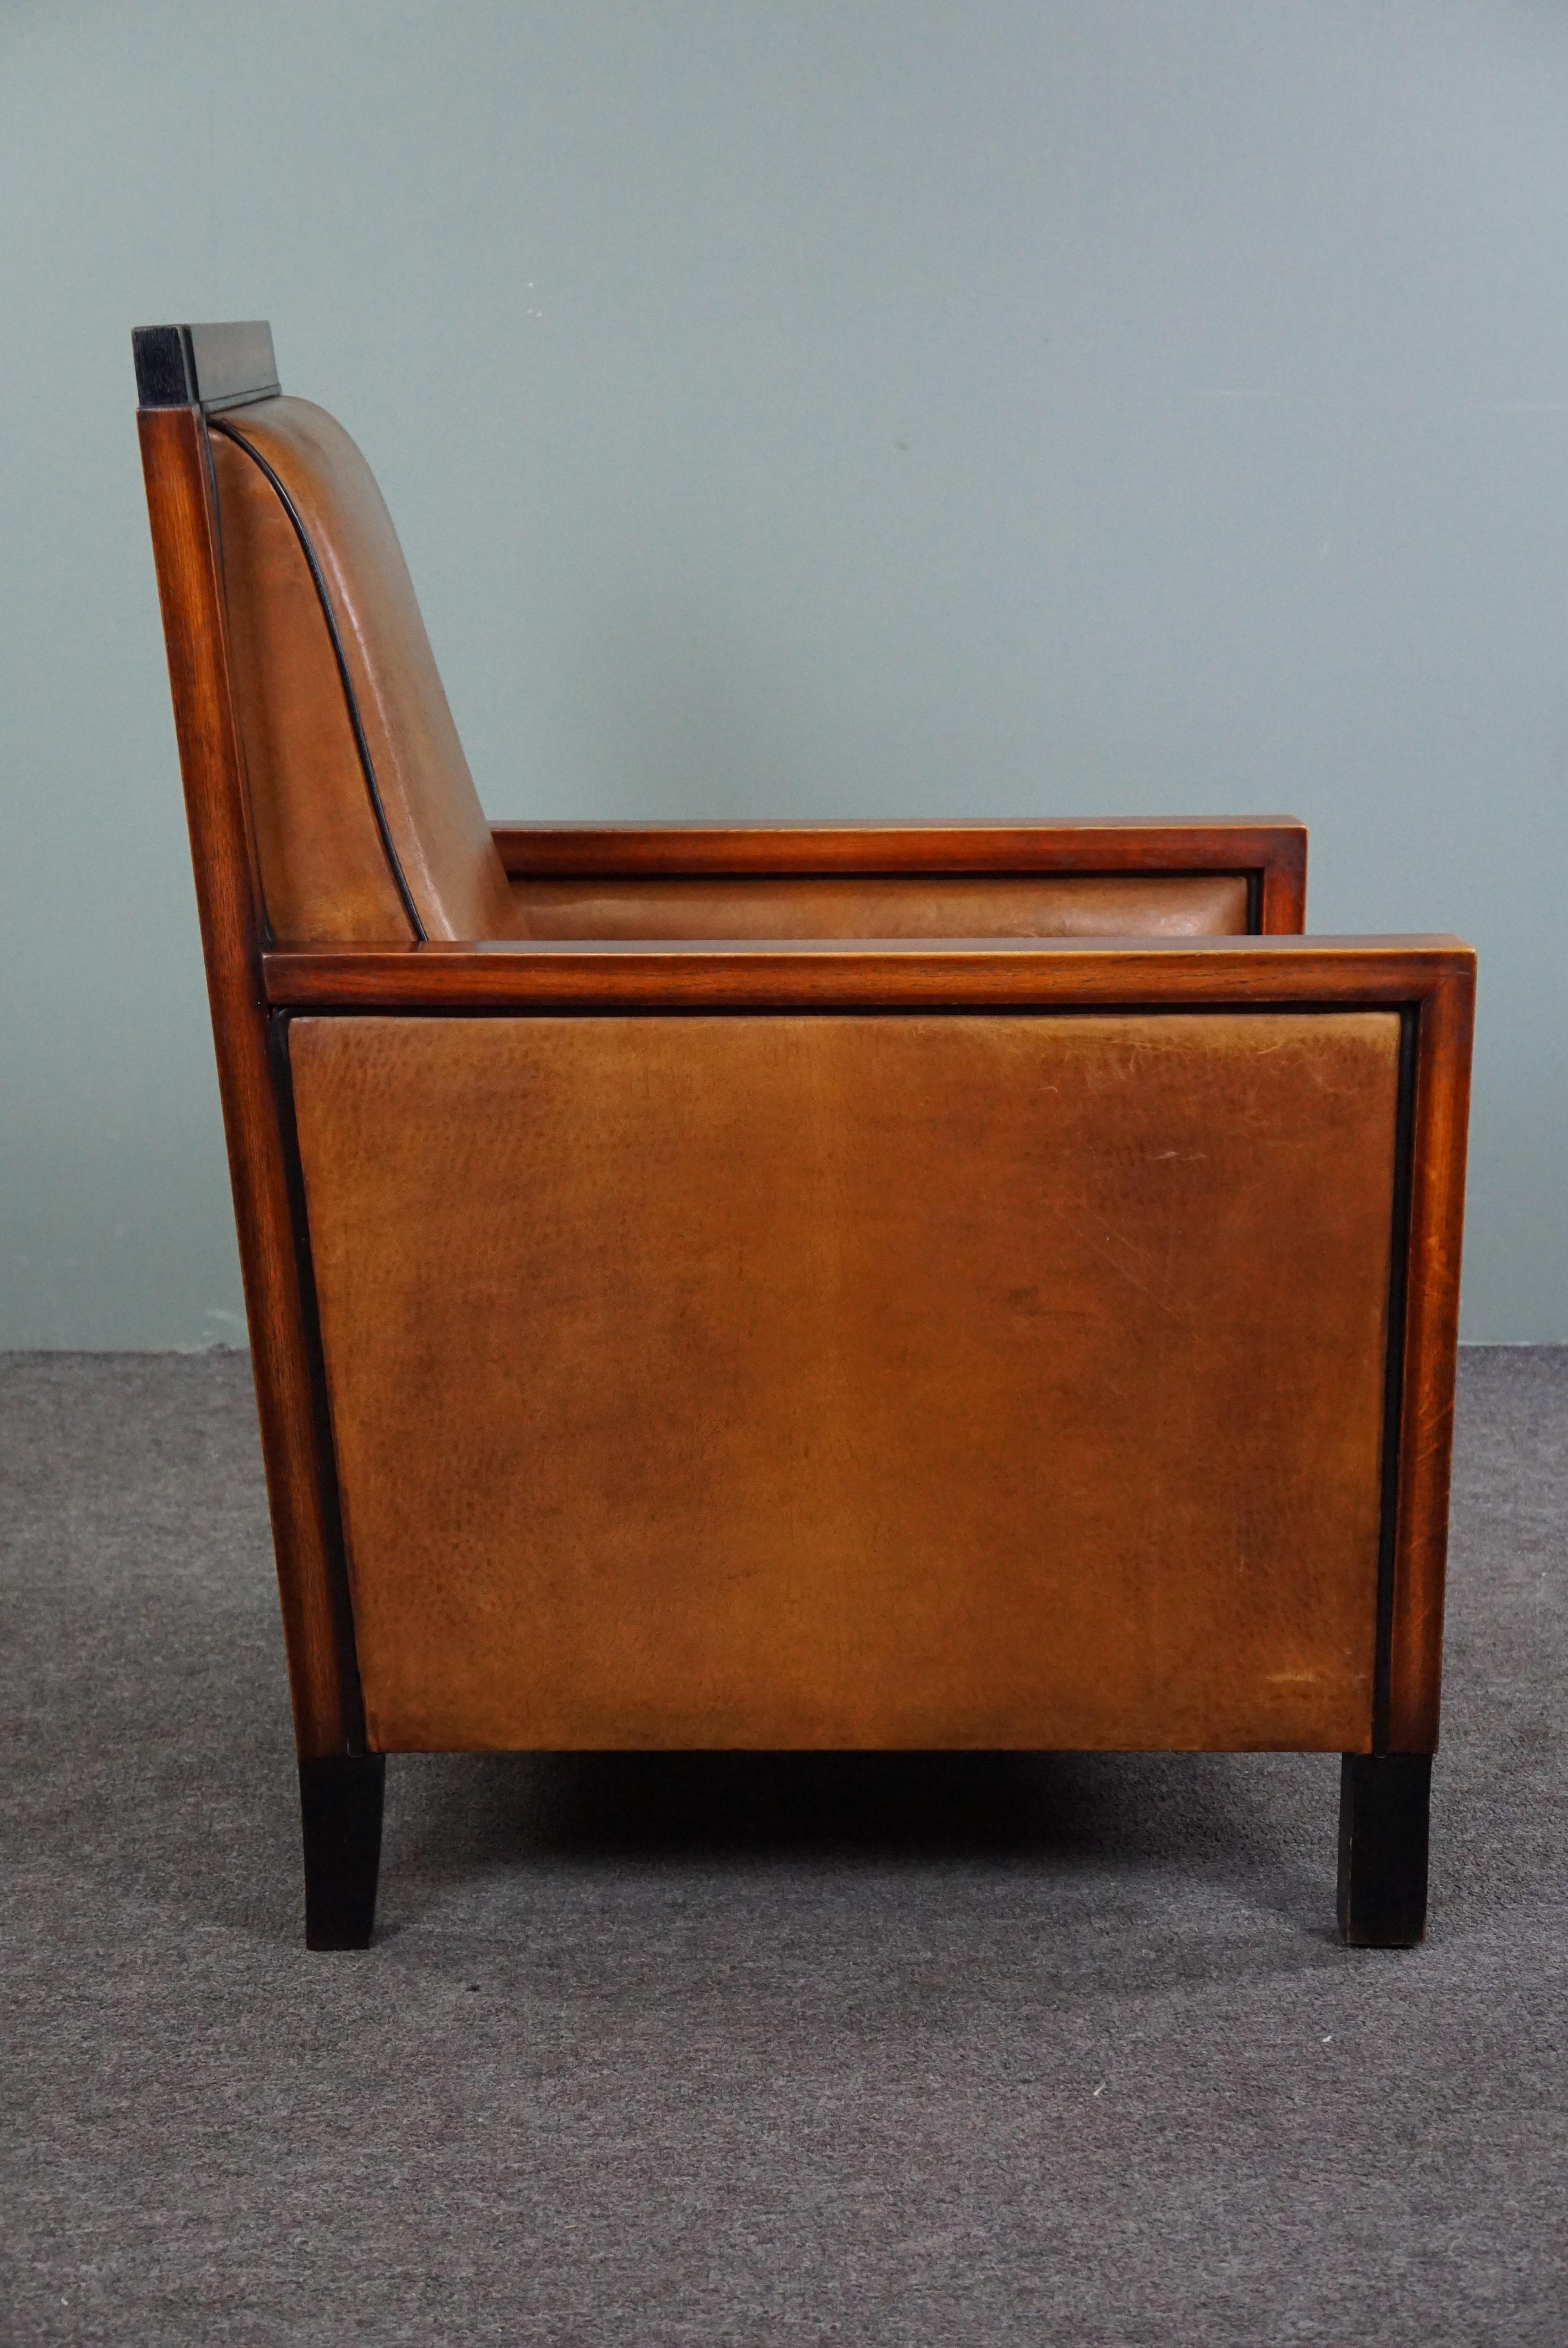 Angeboten wird dieses sehr schöne Schafsleder Art Deco Sessel mit sowohl das Aussehen und die Qualität und Sitzkomfort.

Was für Farben und was für ein Look! Dieser wunderschön gestaltete und gut sitzende Sessel aus Schafsleder hat erstaunlich